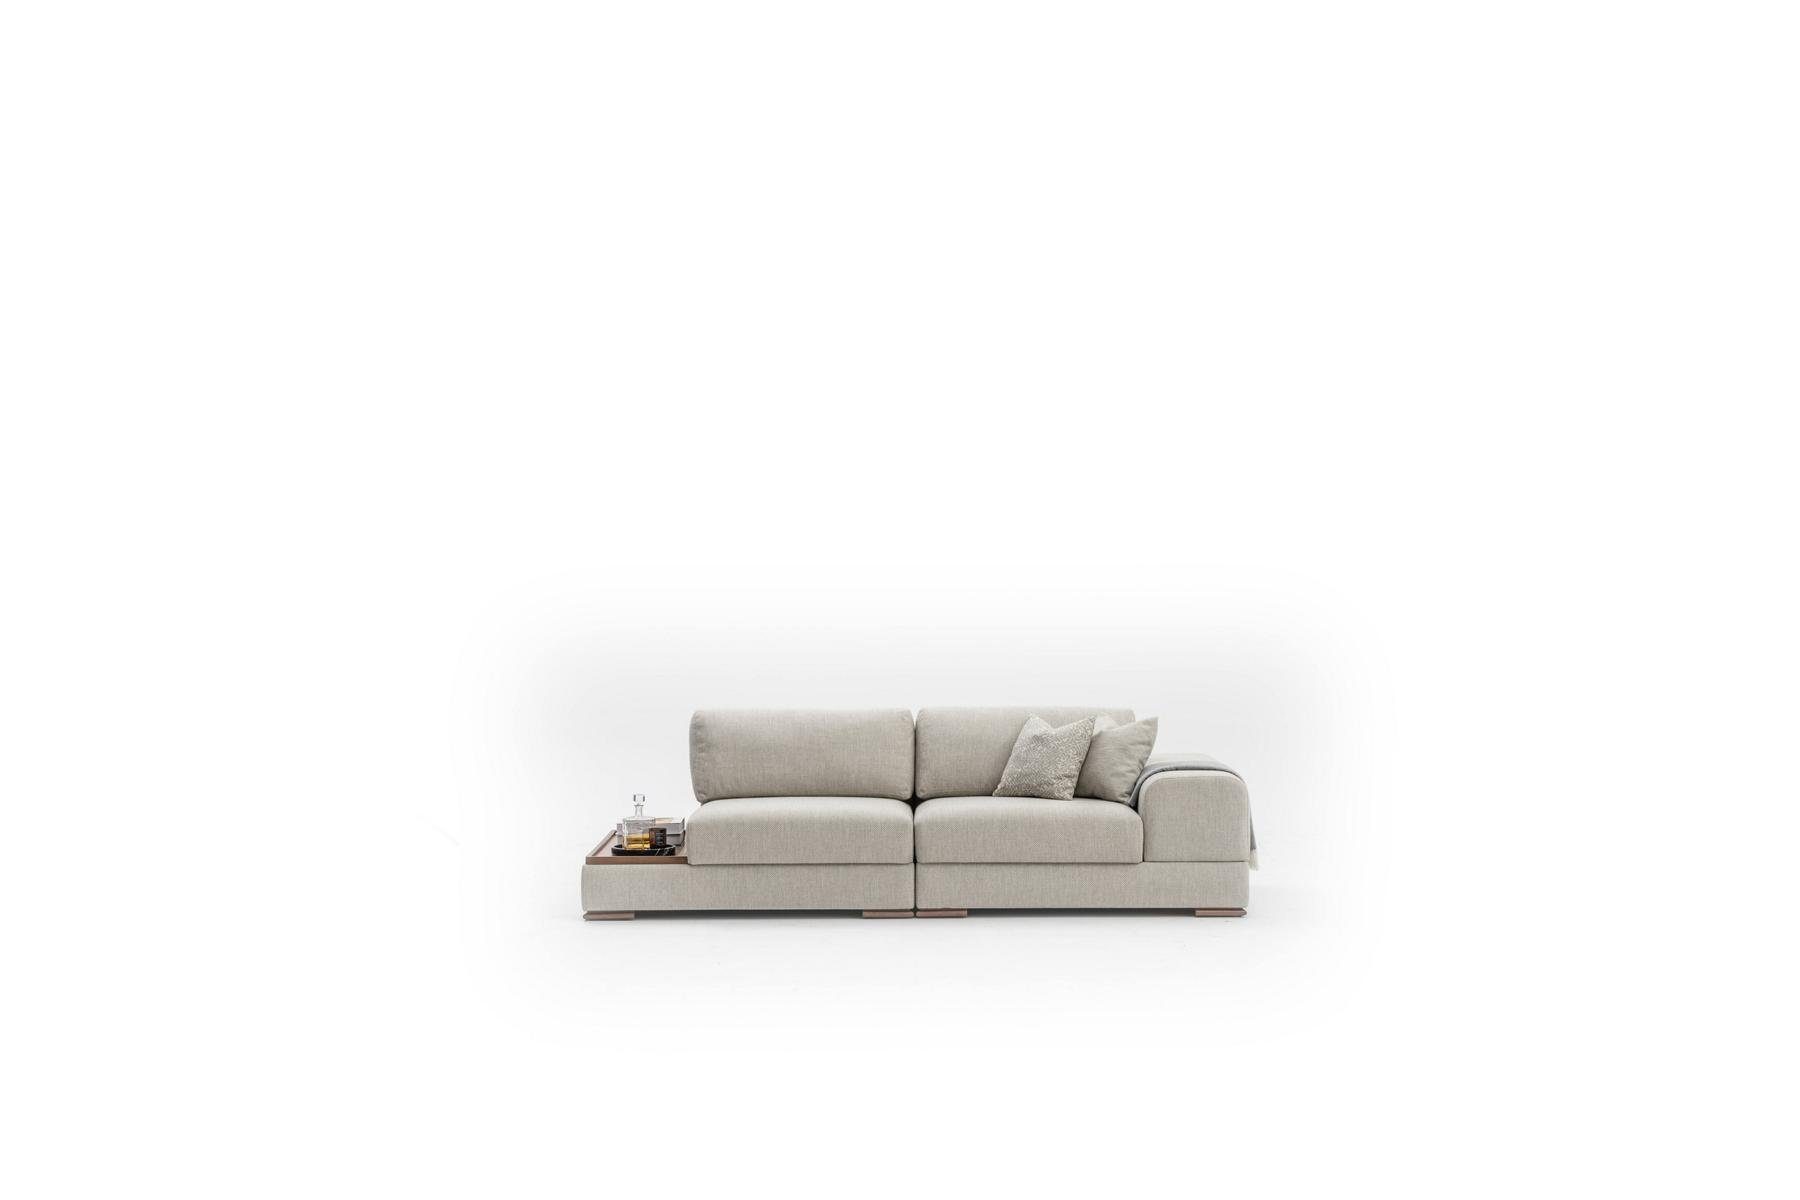 JVmoebel 3-Sitzer Luxus Sofa Wohnzimmer Design 260cm Big Sofas 3 Sitzer Neu, Made in Europe